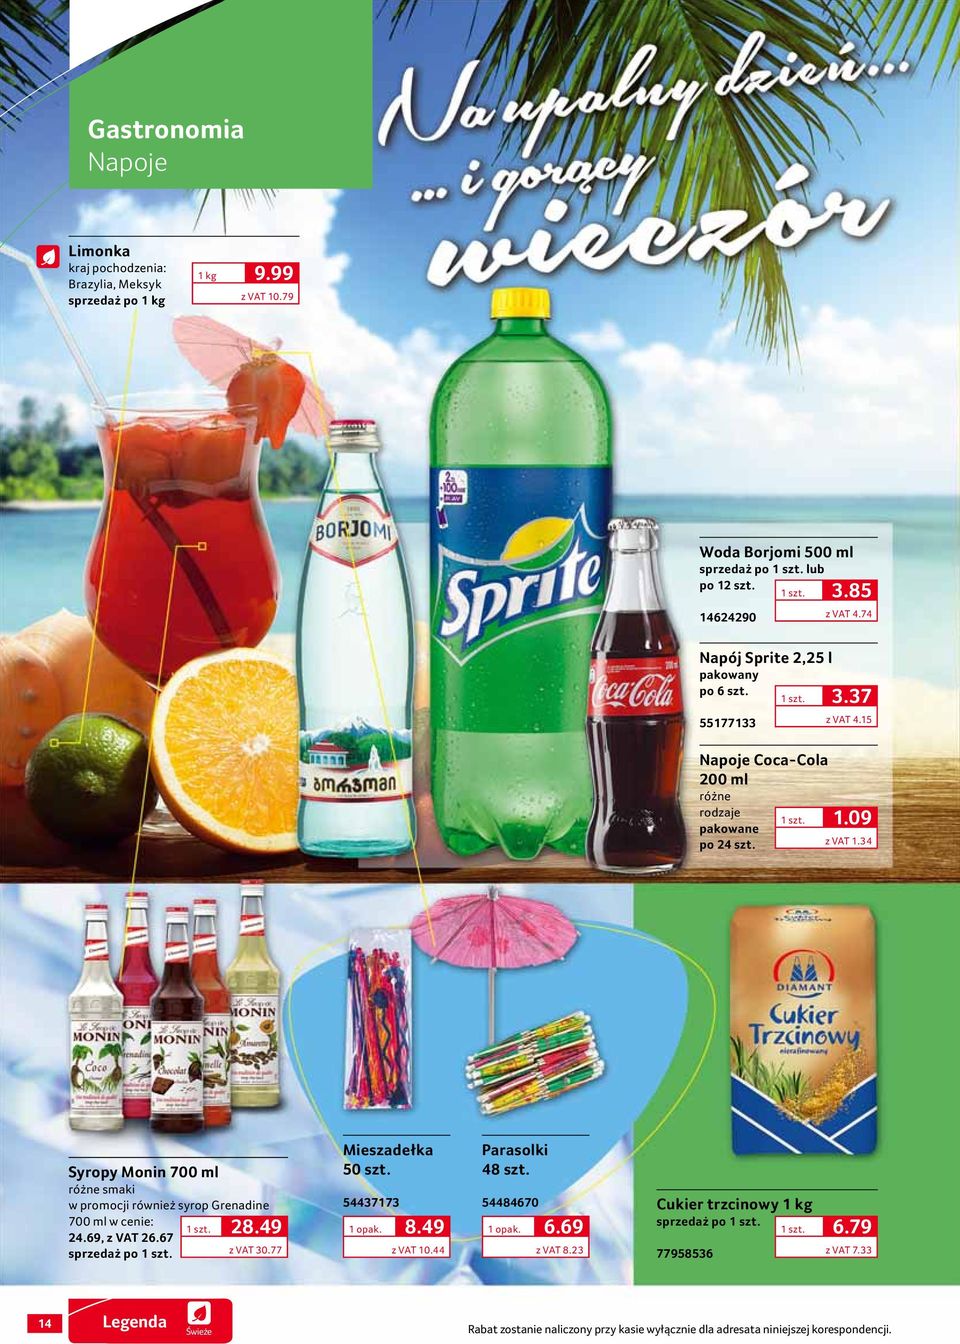 34 Syropy Monin 700 ml różne smaki w promocji również syrop Grenadine 700 ml w cenie: 24.69, z VAT 26.67 po 28.49 z VAT 30.77 Mieszadełka 50 szt. 54437173 8.